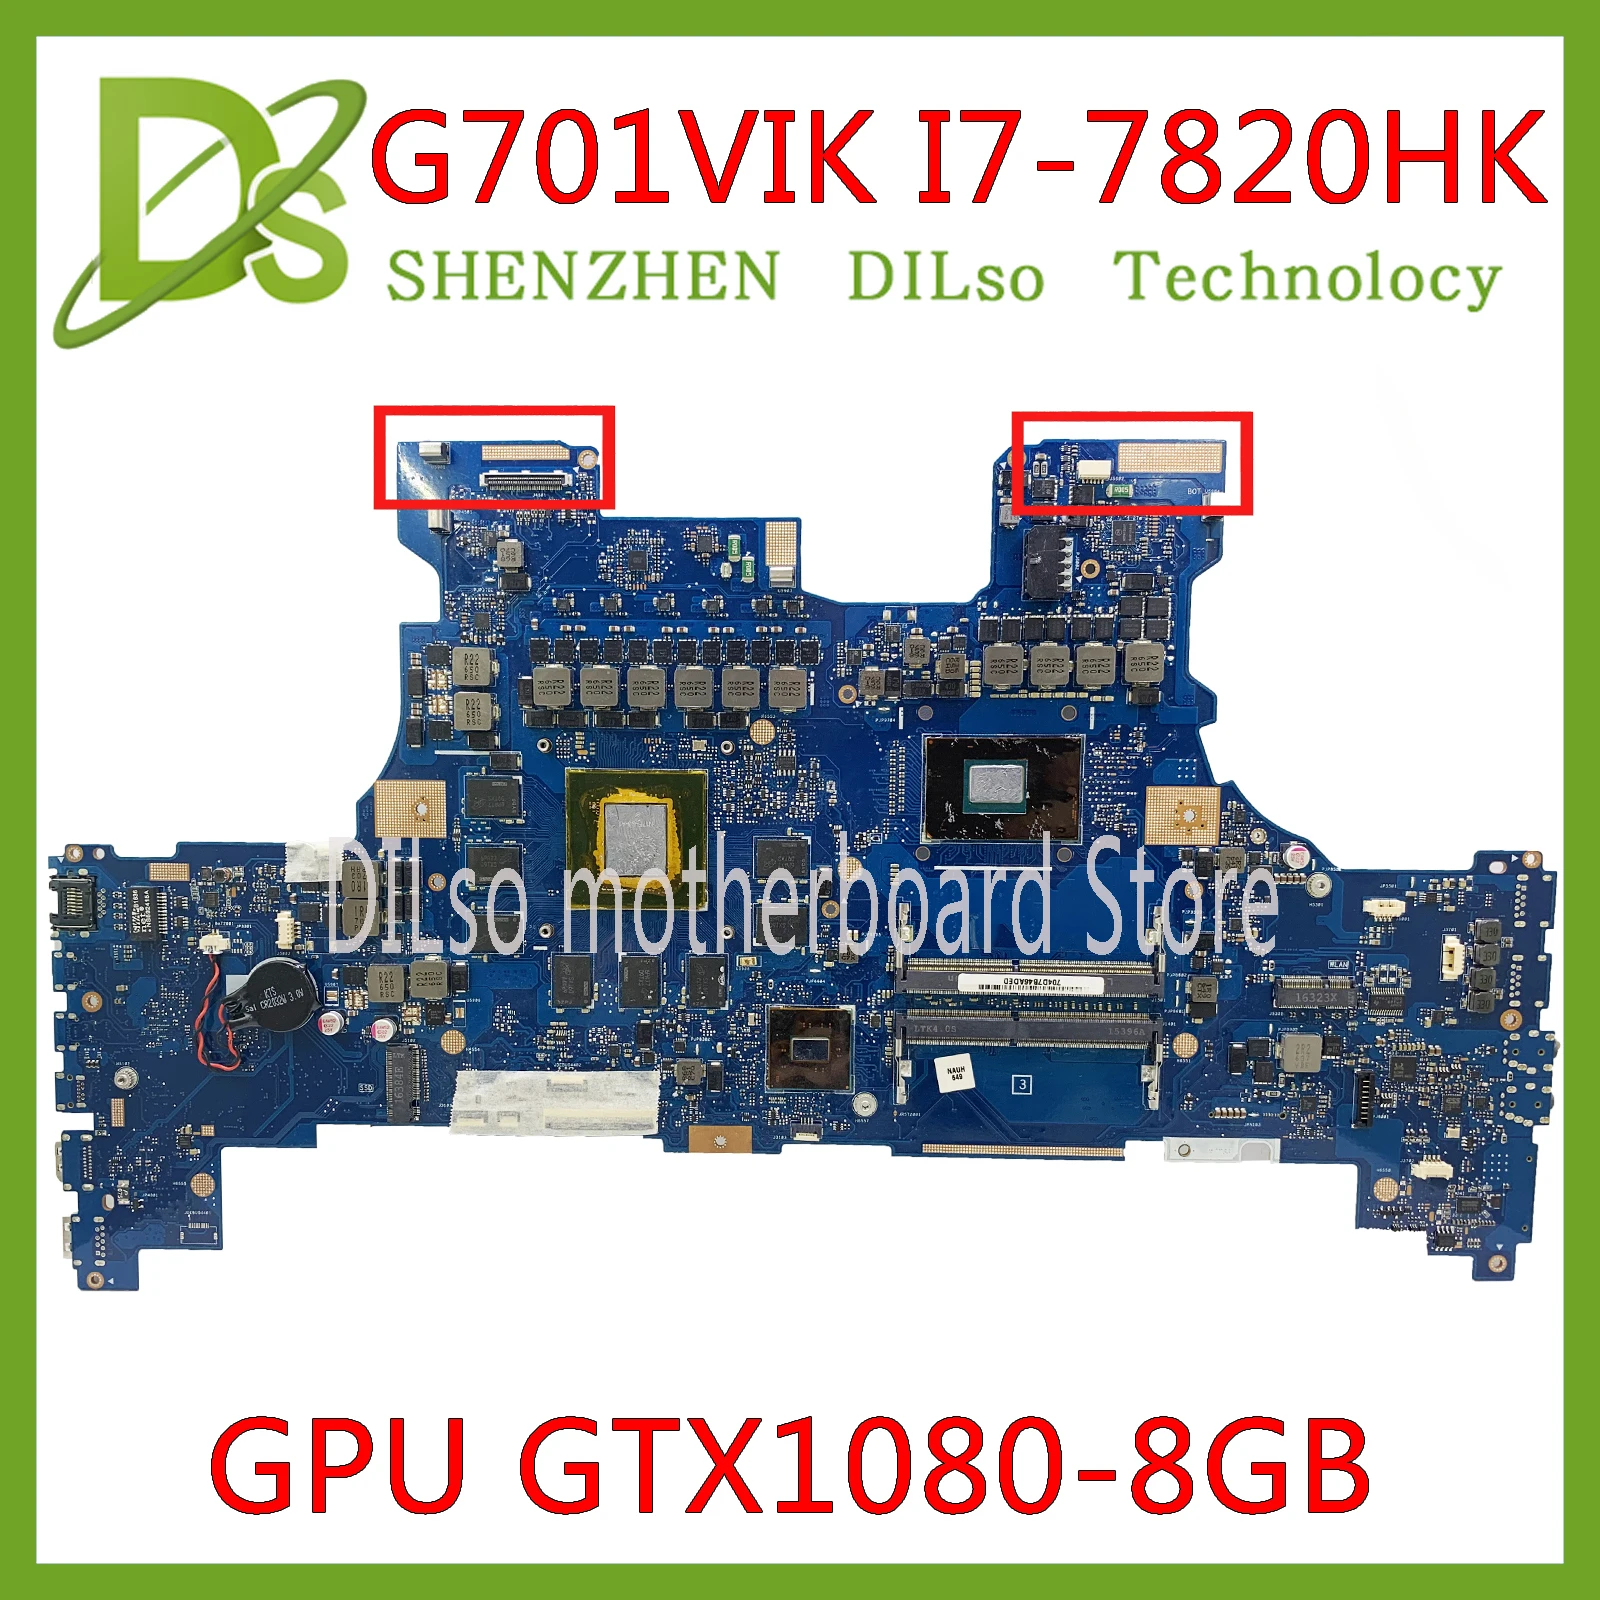 

KEFU G701VIK Motherboard For Asus ROG G701 G701V G701VI Laptop Motherboard Test OK I7-7820HK CPU GTX1080/8GB Motherboard Test